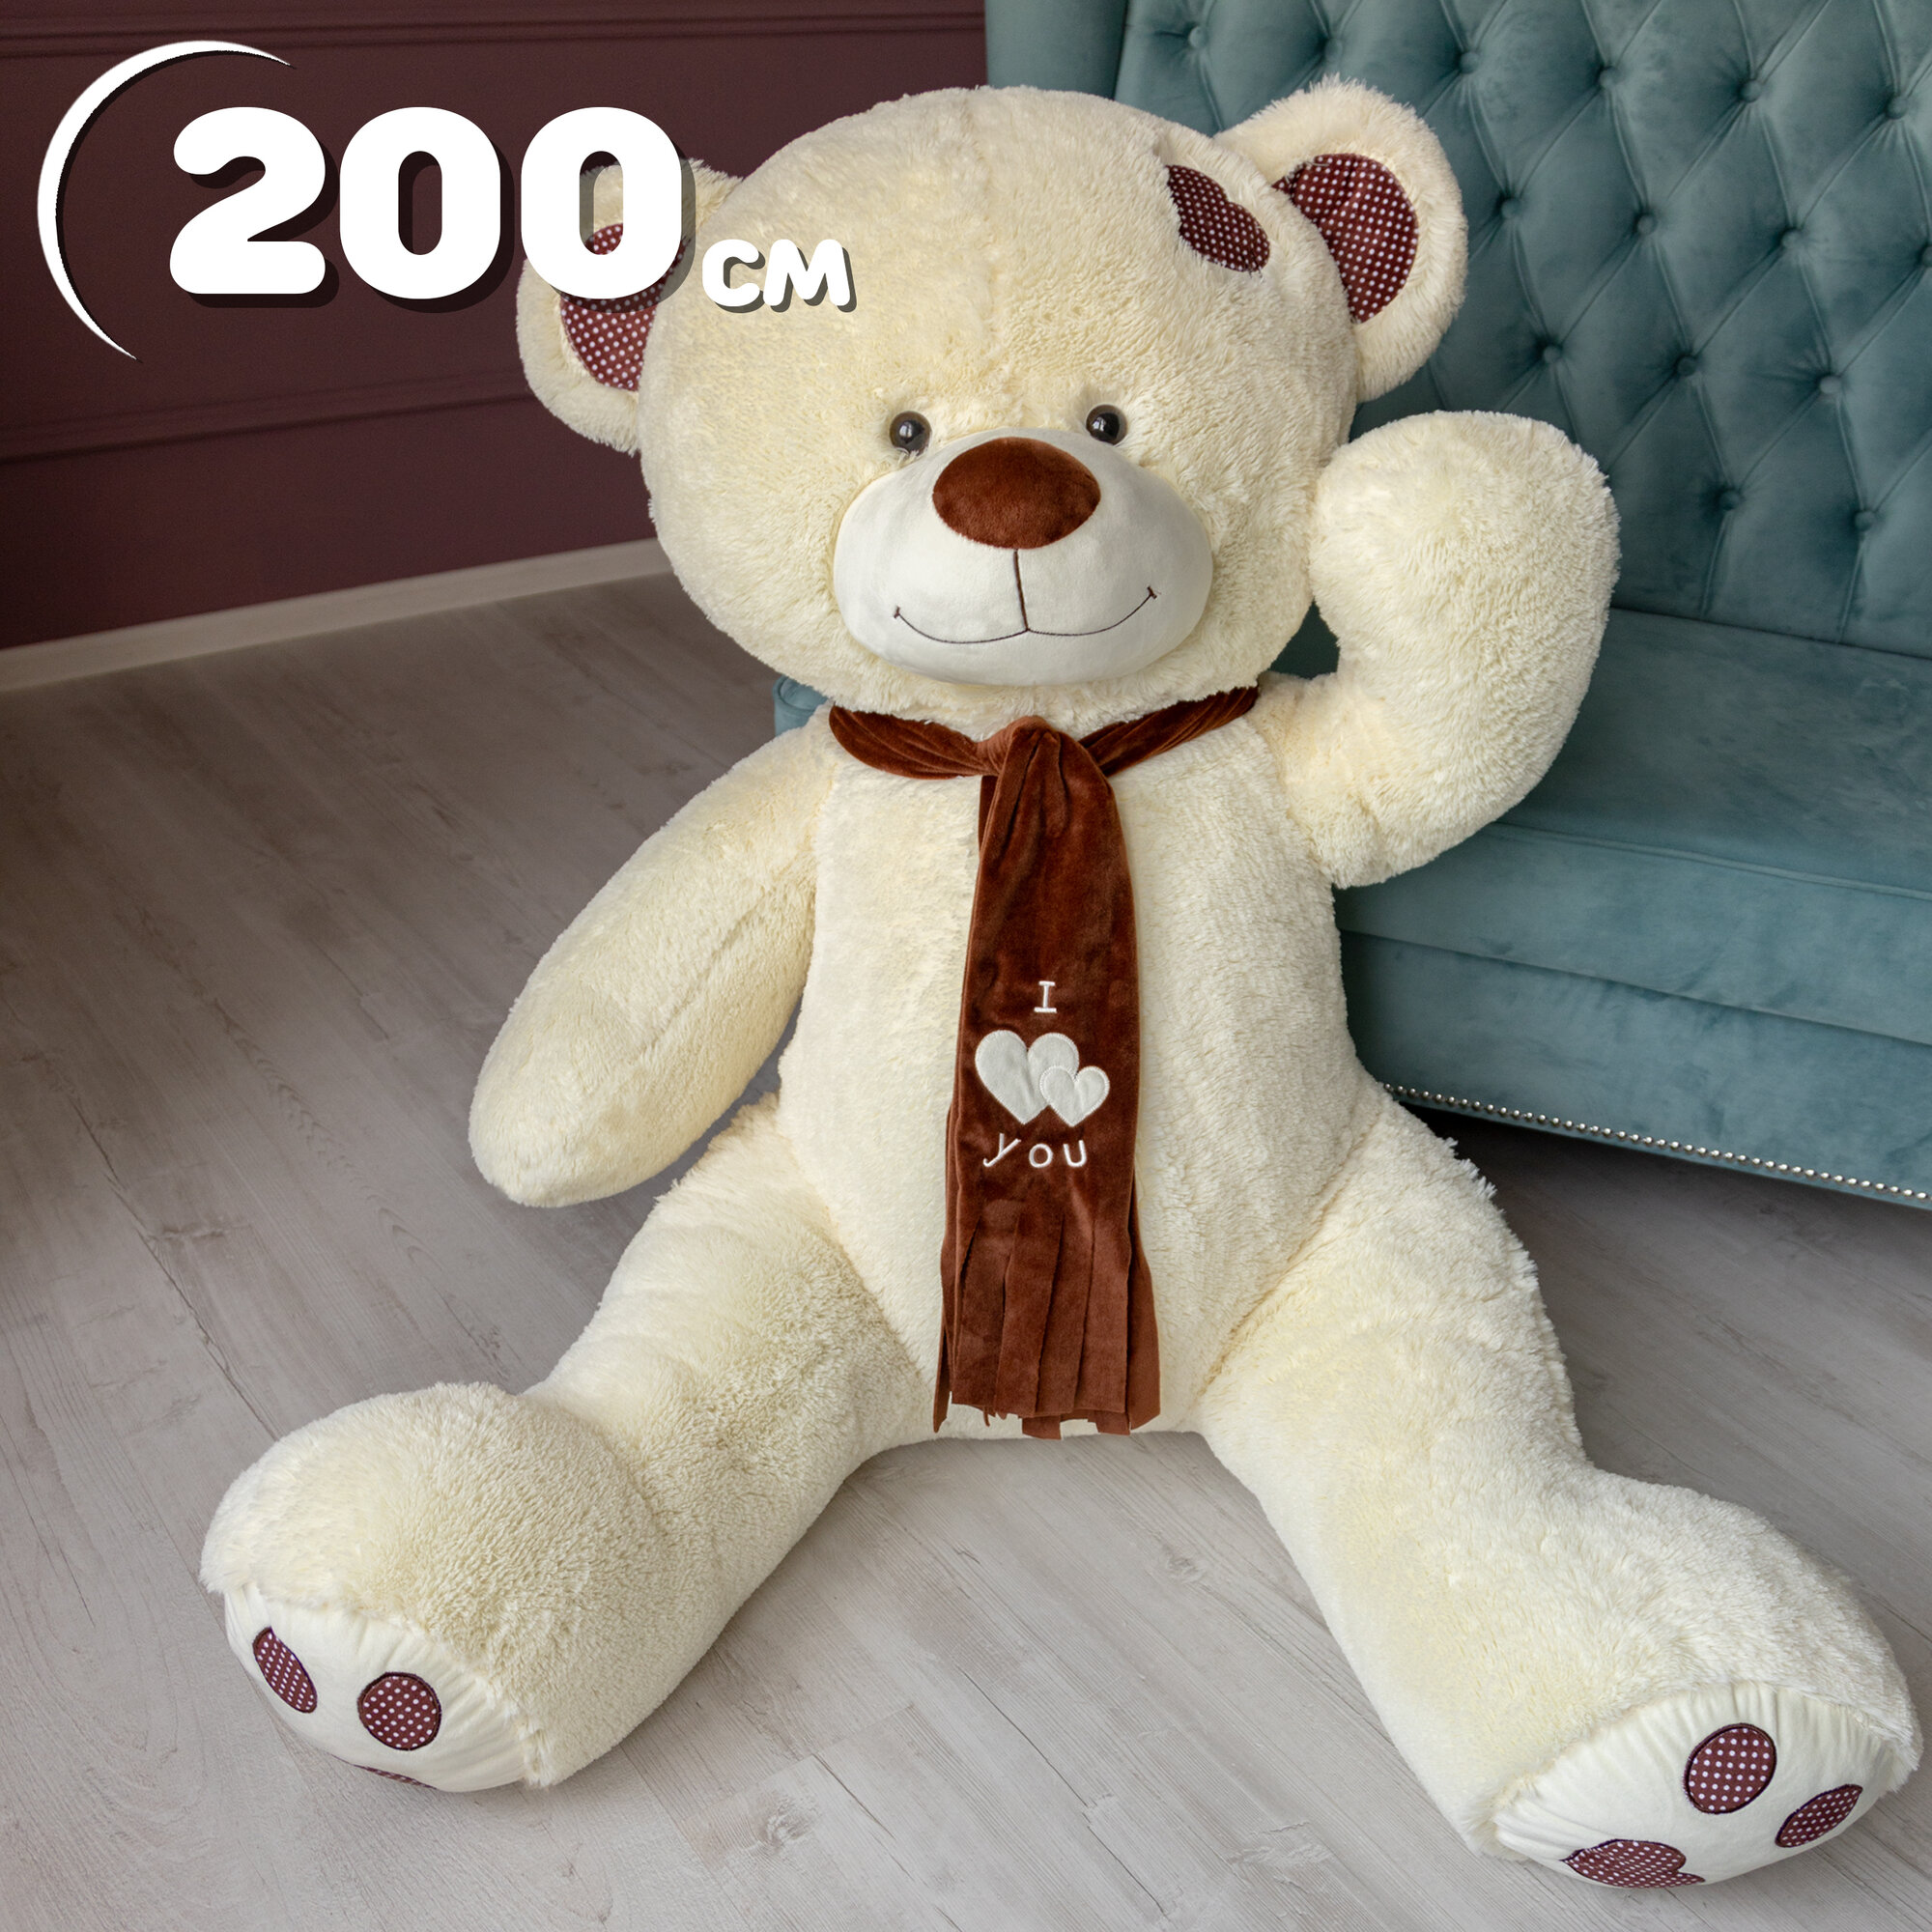 Мягкая игрушка огромный плюшевый медведь Тони с шарфом 200 см, большой плюшевый мишка, подарки детям, подарок девушке, на день рождение цвет латте